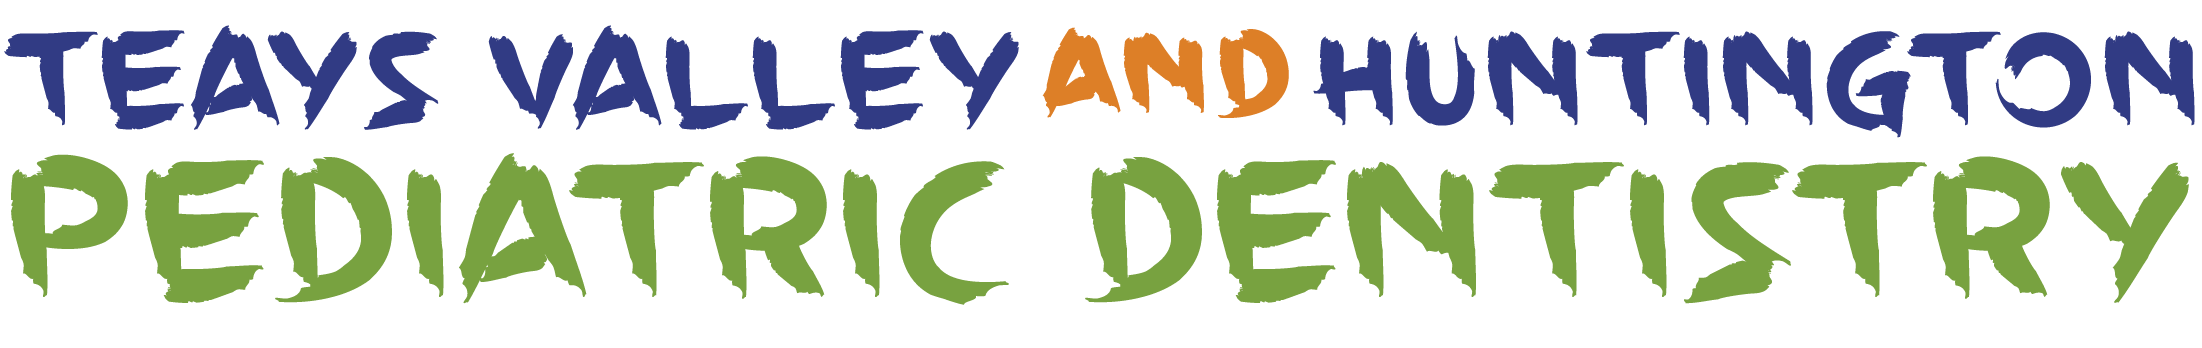 TeaysValley-text-logo